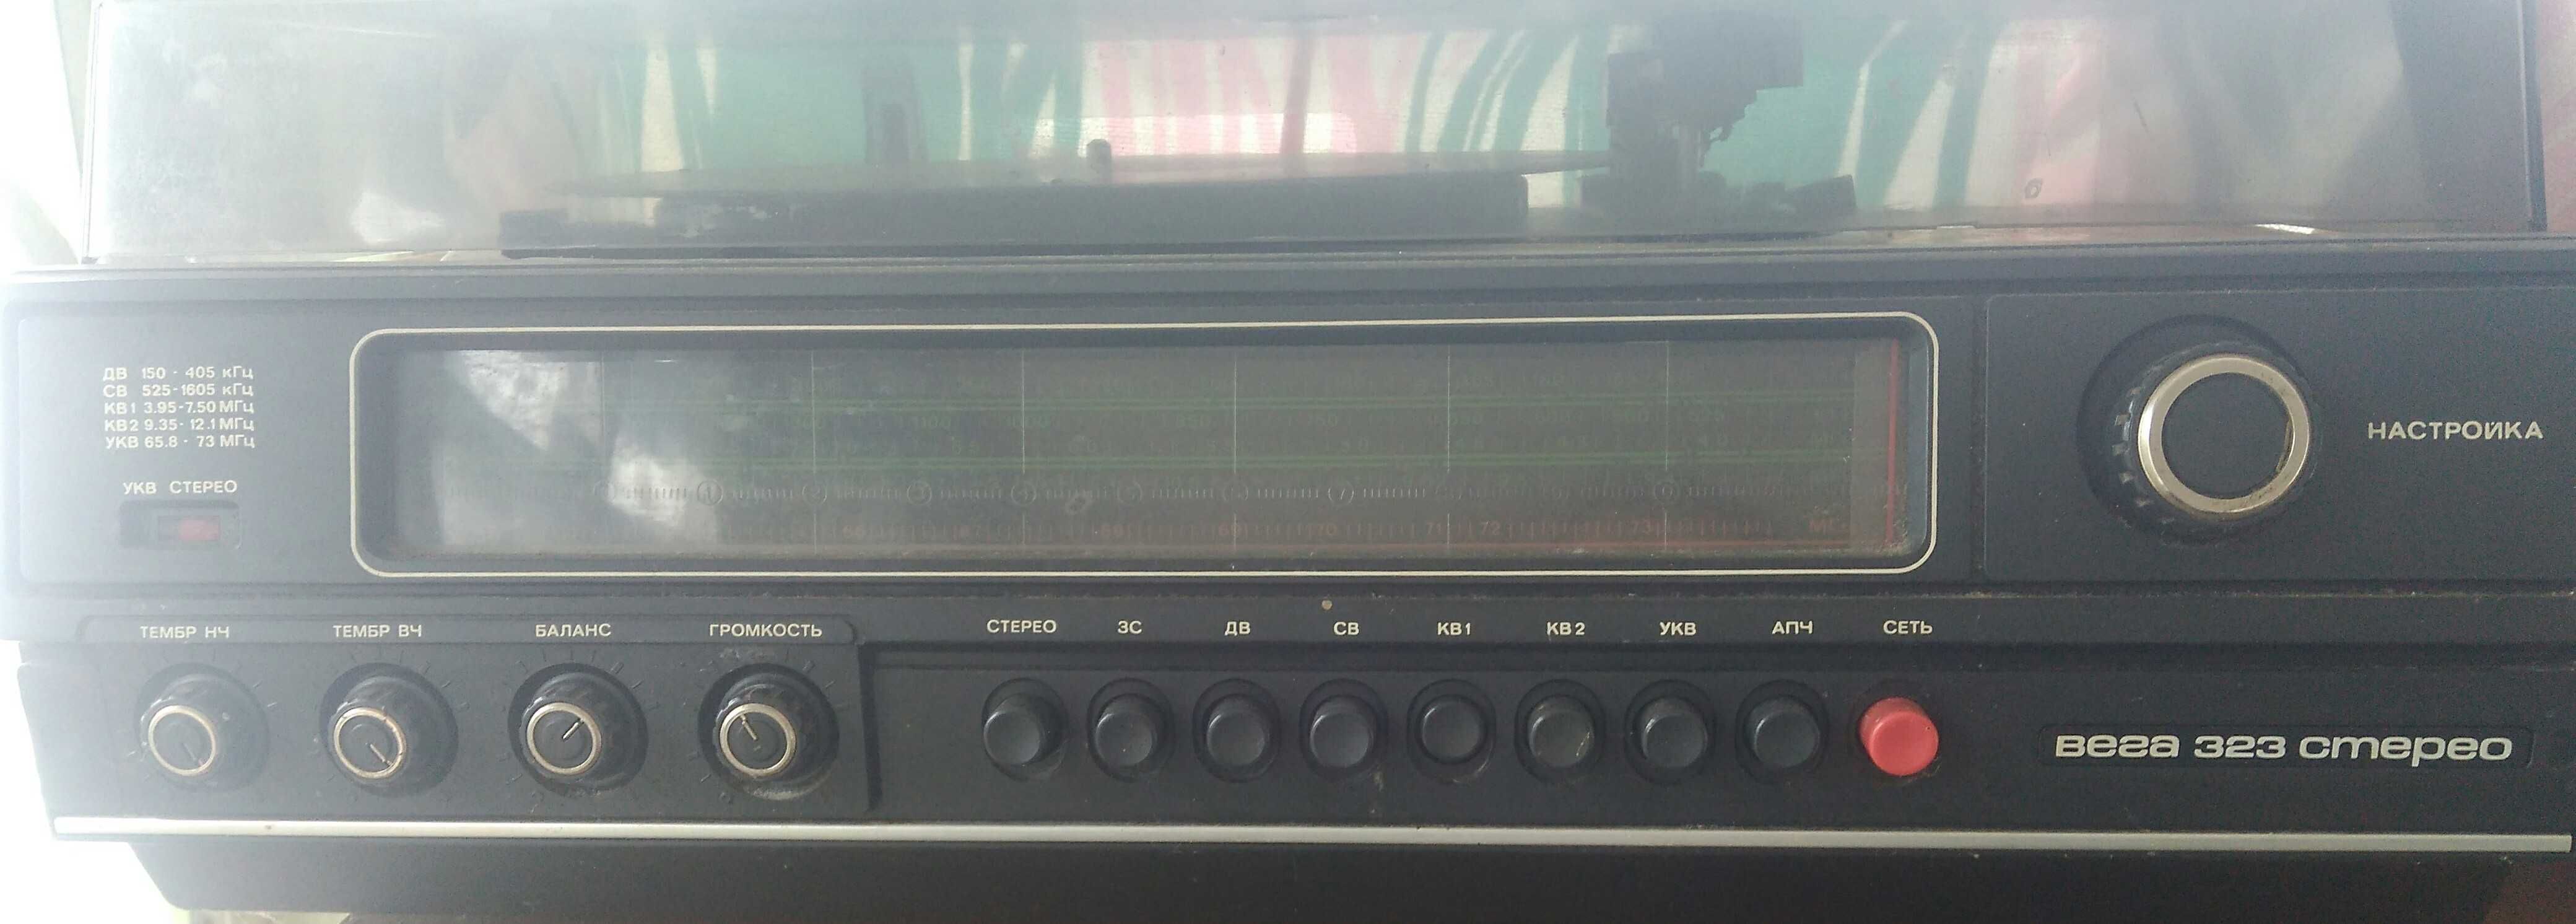 Радиола Вега-323 стерео.